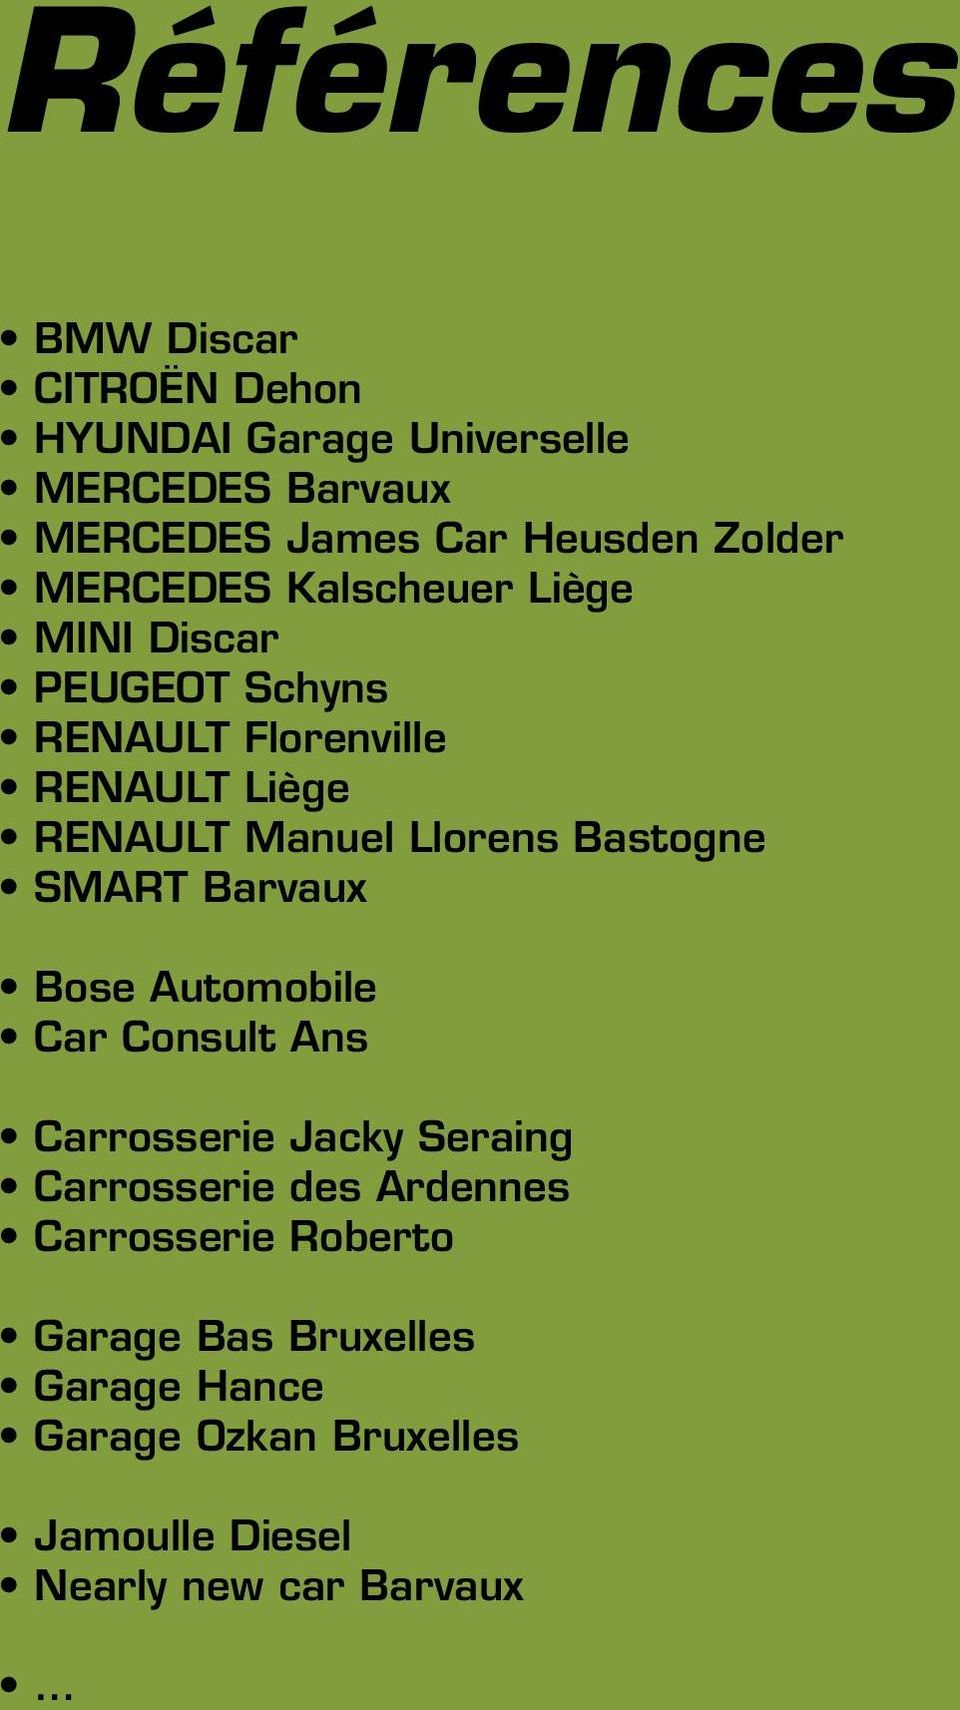 Llorens Bastogne Smart Barvaux Bose Automobile Car Consult Ans Carrosserie Jacky Seraing Carrosserie des